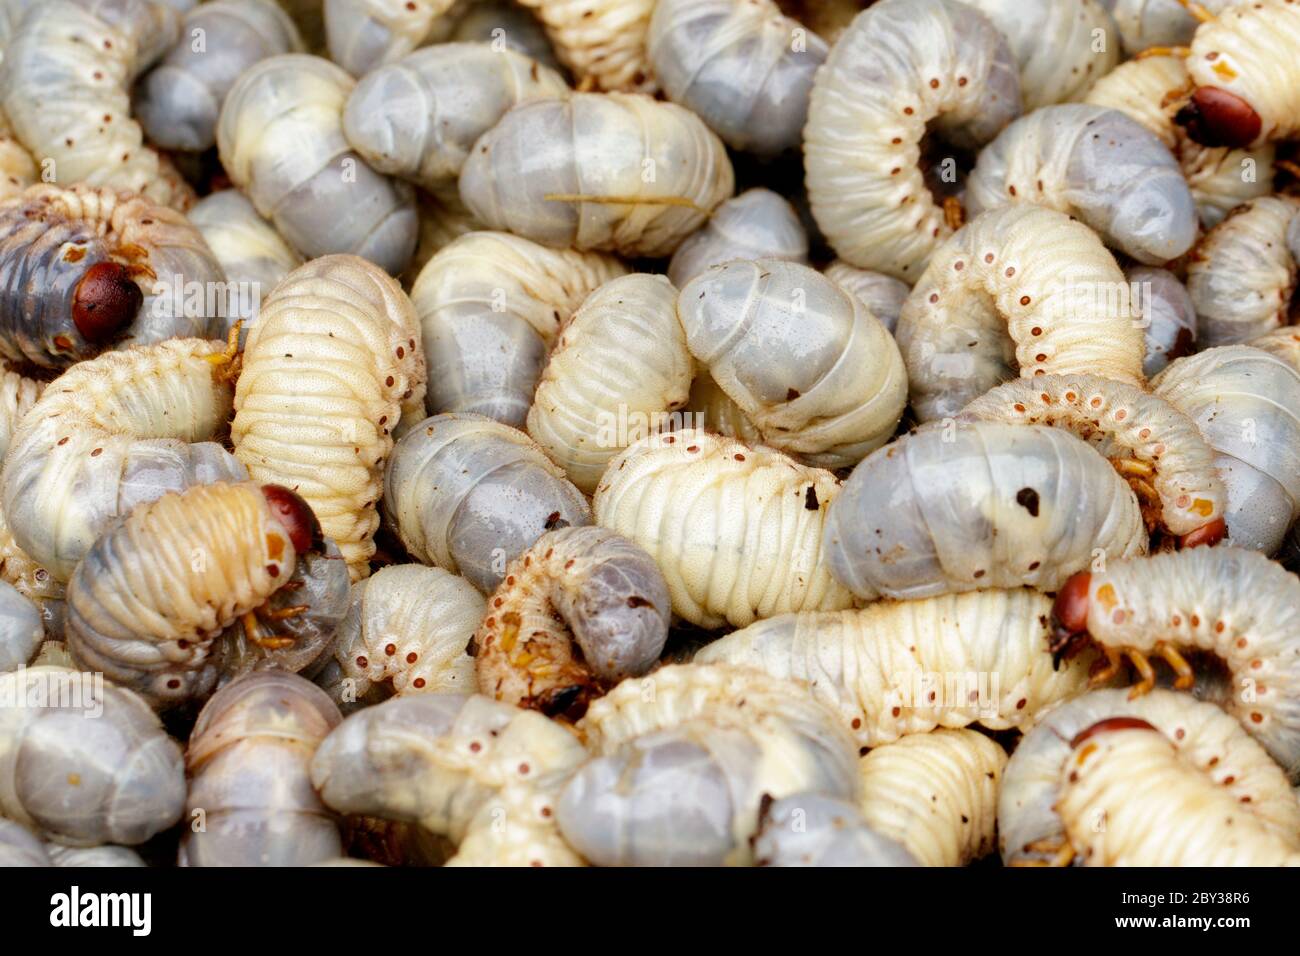 Immagine di vermi di grano, rhinoceros di cocco (Oryctes rhinoceros), Larva. Foto Stock